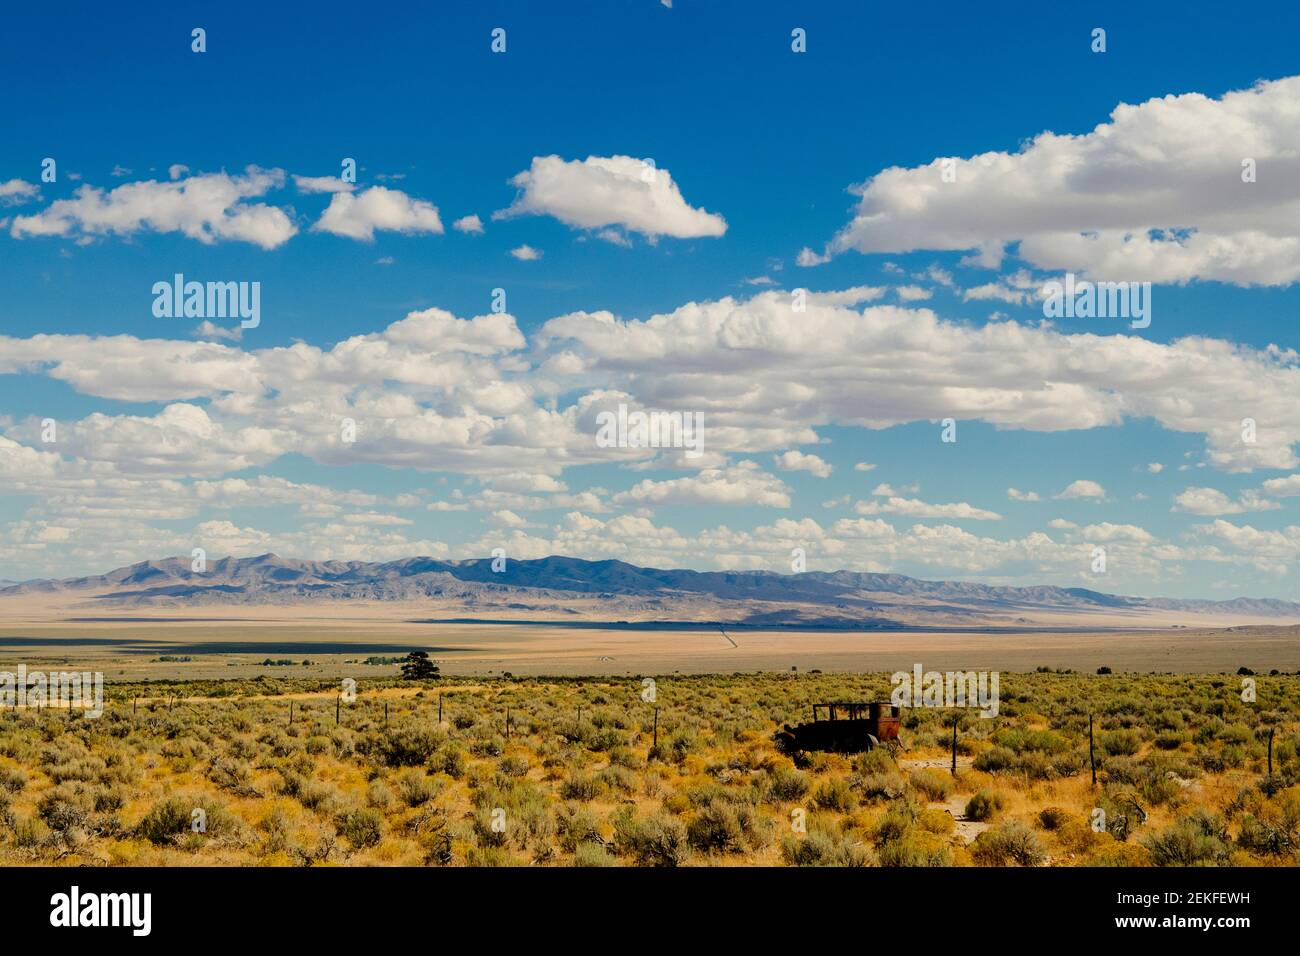 Un viejo coche naufragado en el desierto, Parque Nacional de la Gran Cuenca, Nevada, EE.UU Foto de stock